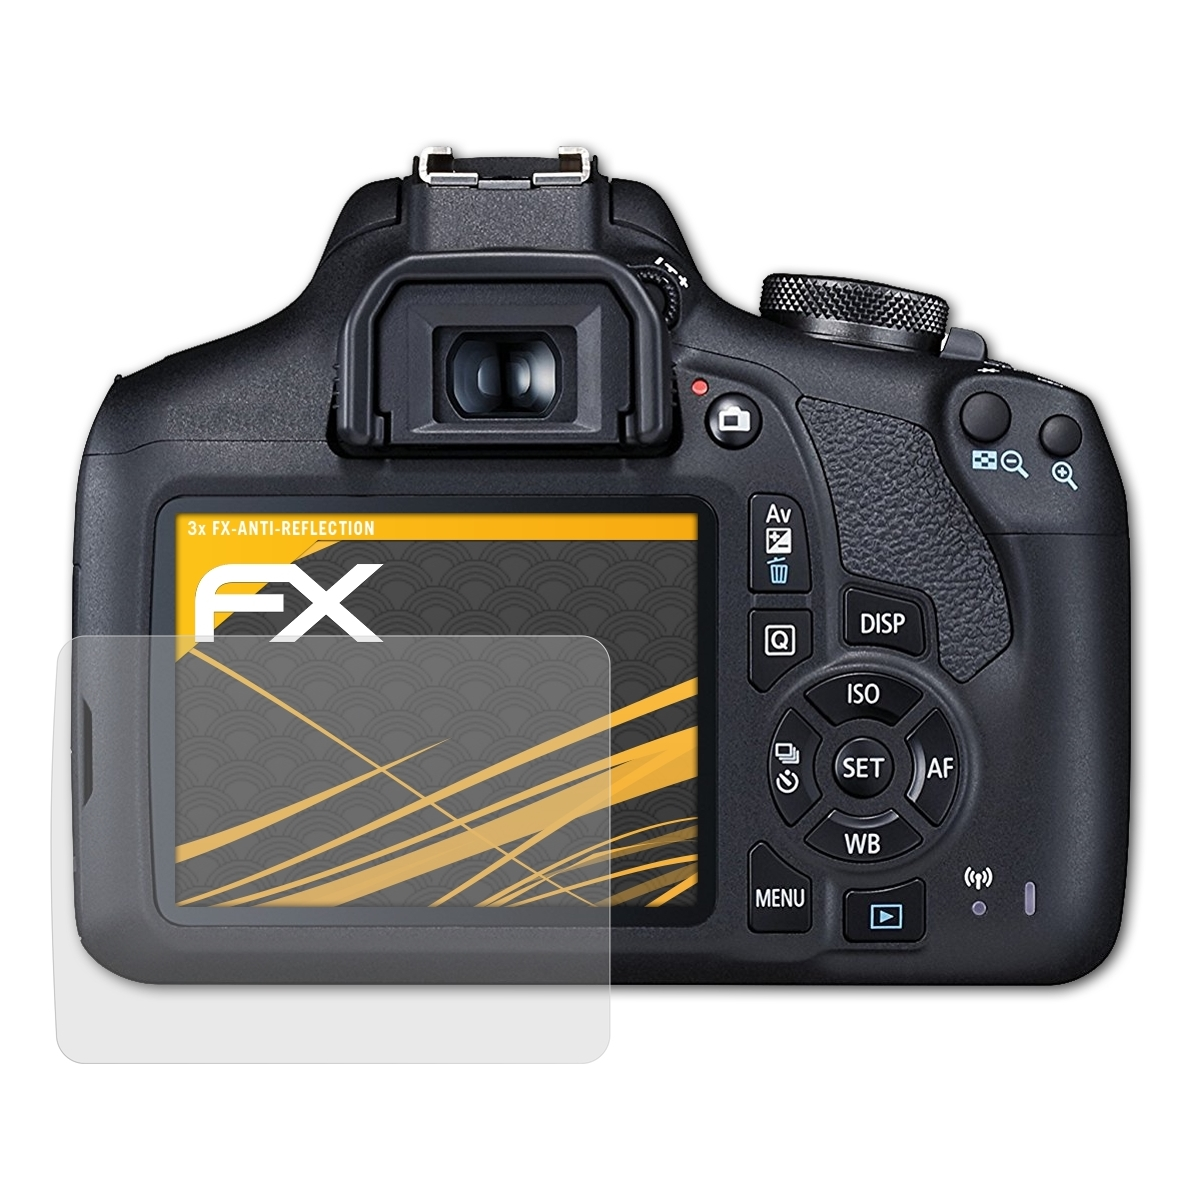 ATFOLIX 3x 2000D) Canon EOS FX-Antireflex Displayschutz(für